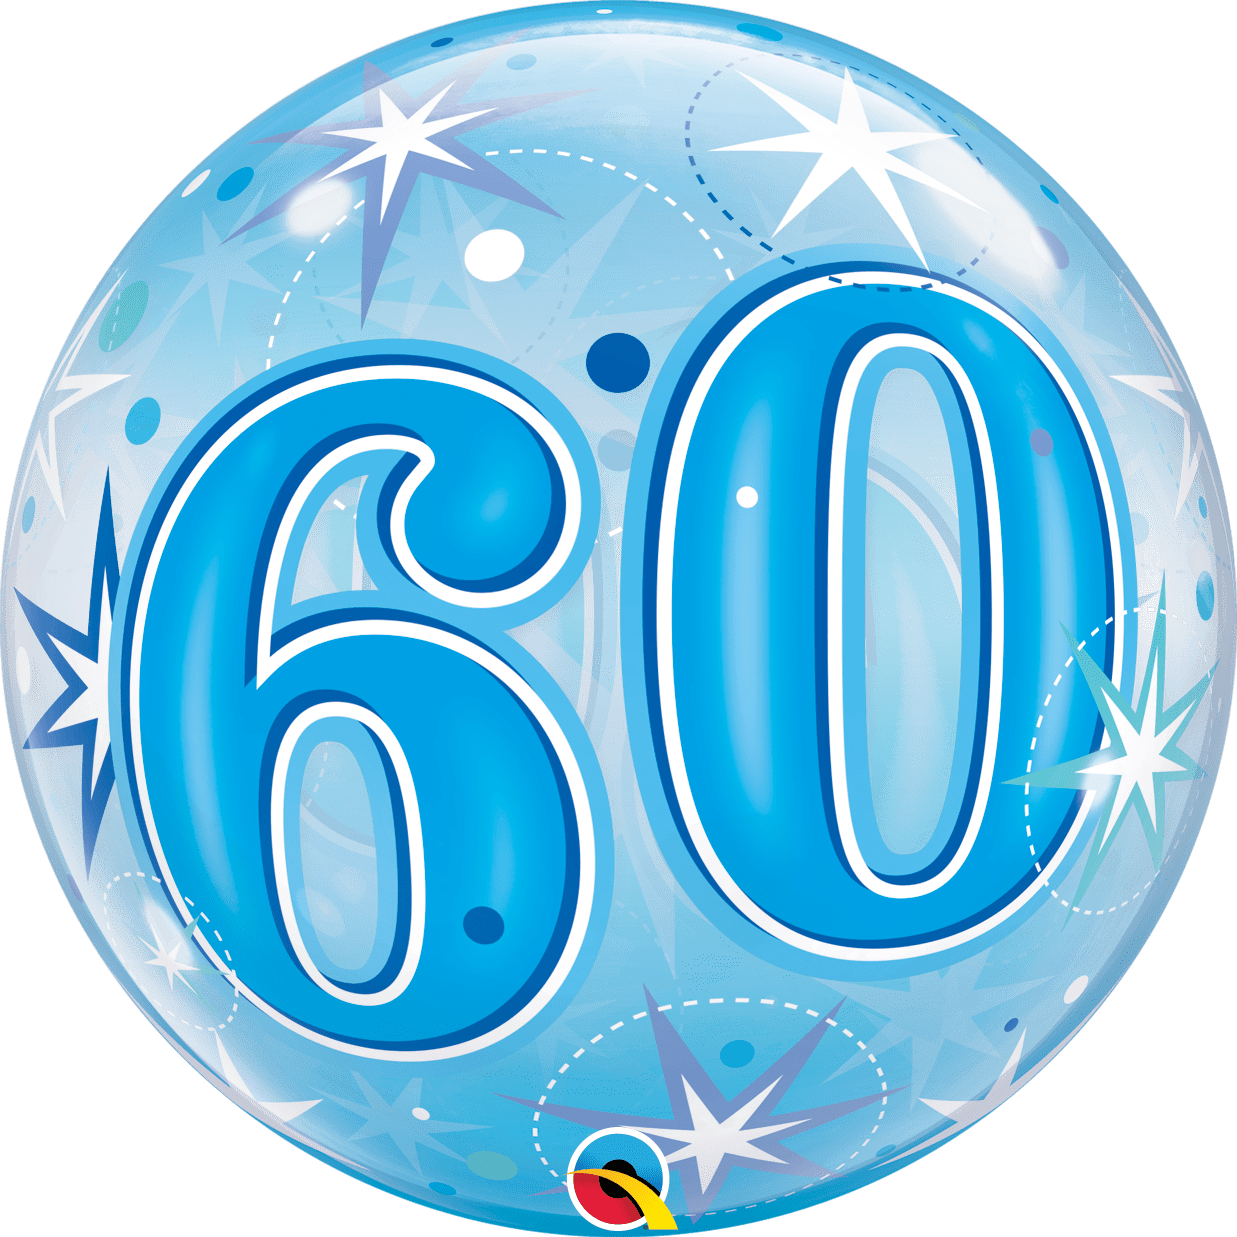 60th Birthday Balloon In A Box - 60th Birthday Balloon In A Box (1237x1237)